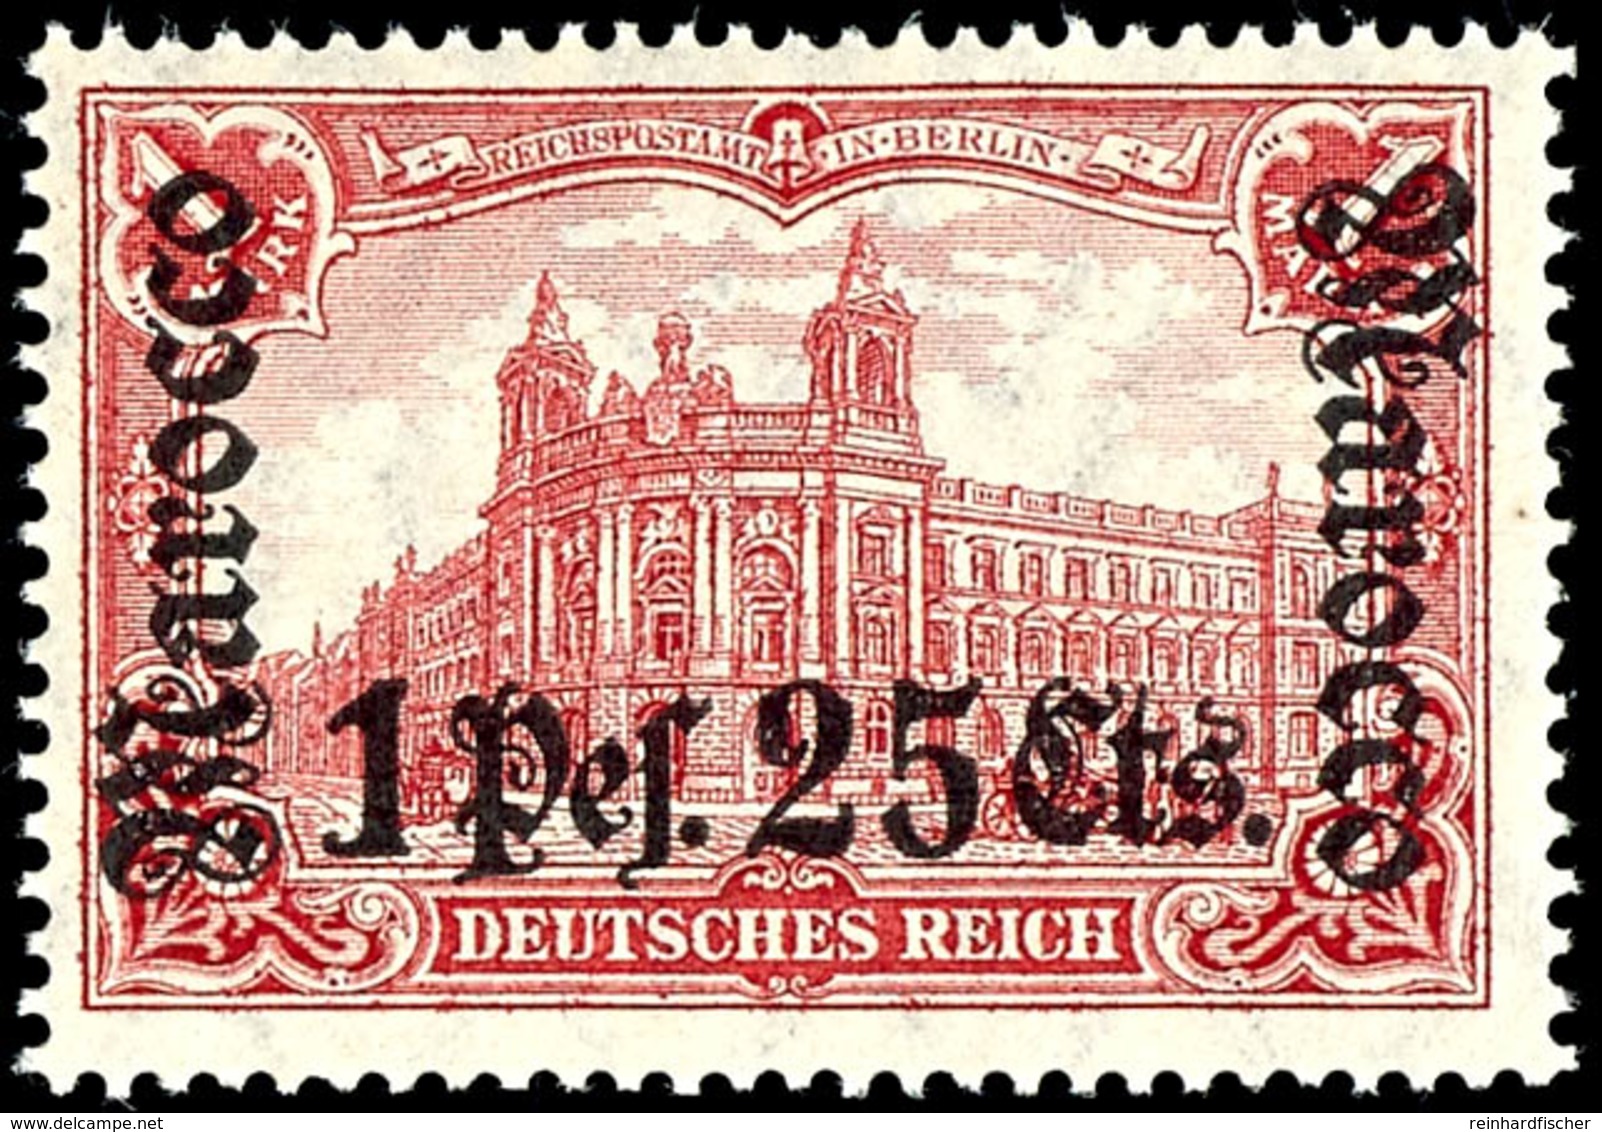 1 P. 25 C. Auf 1 M. Deutsches Reich, Tadellos Postfrisch, Kabinett, Gepr. Bühler, Mi. 220.-, Katalog: 43 ** - Deutsche Post In Marokko